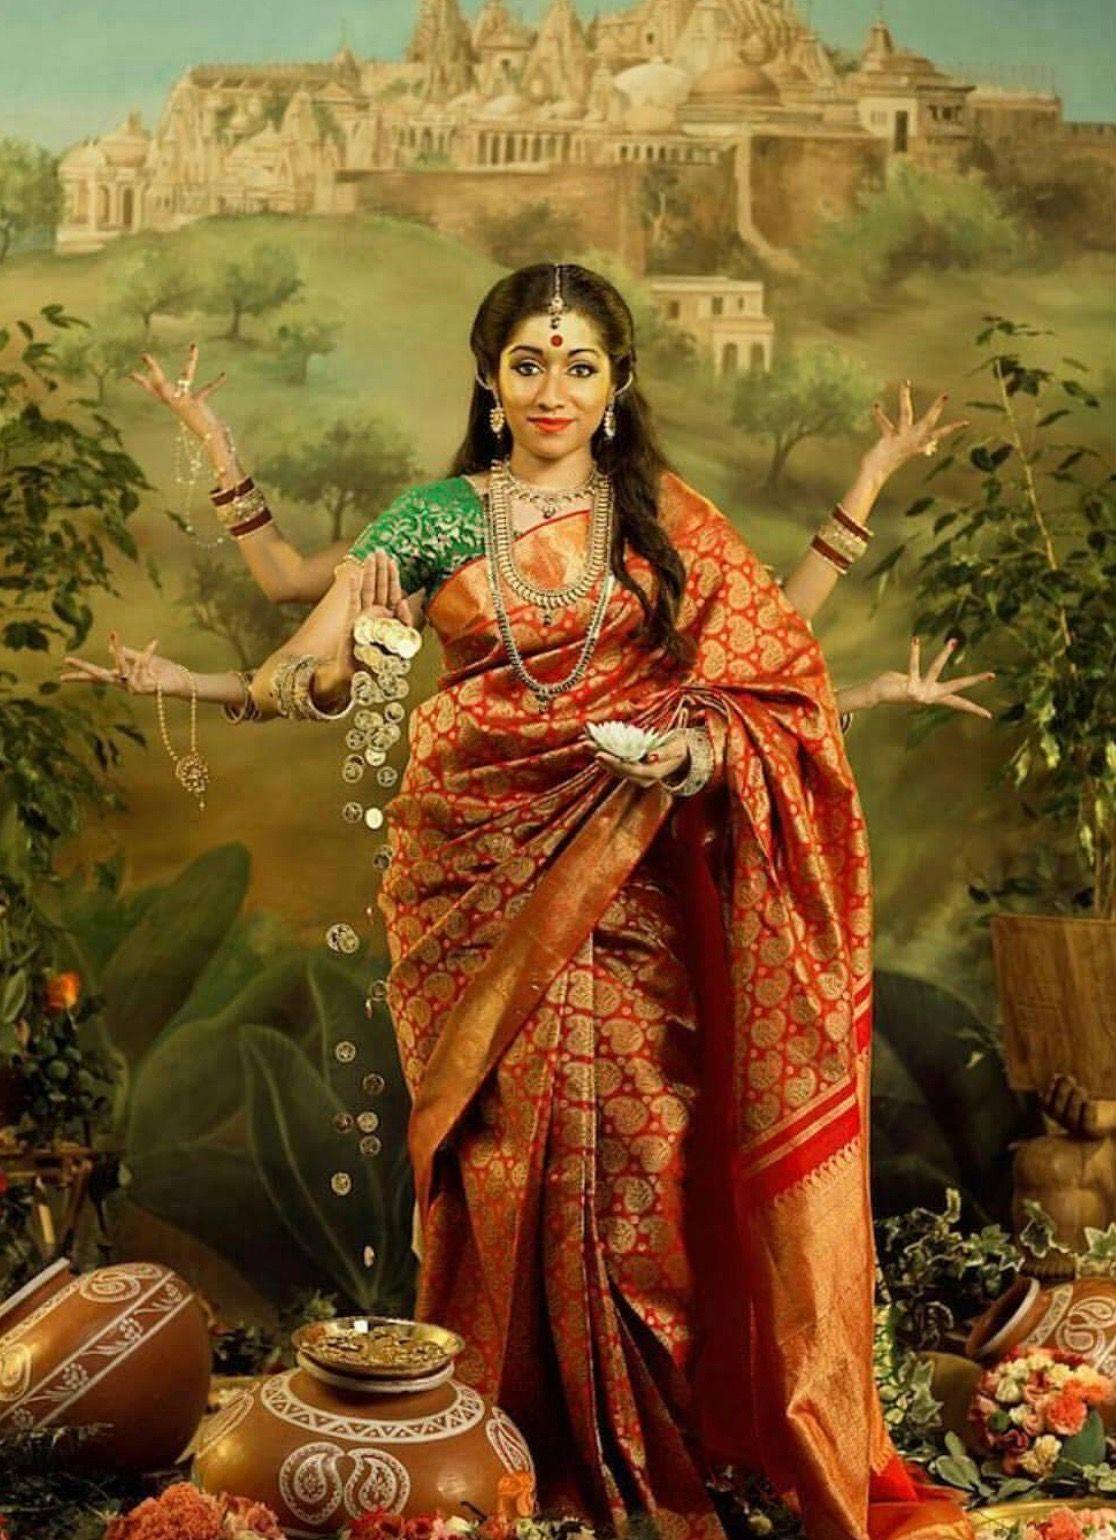 Парвати – почему в индии богиню называют и “светлой”, и “зловещей”?